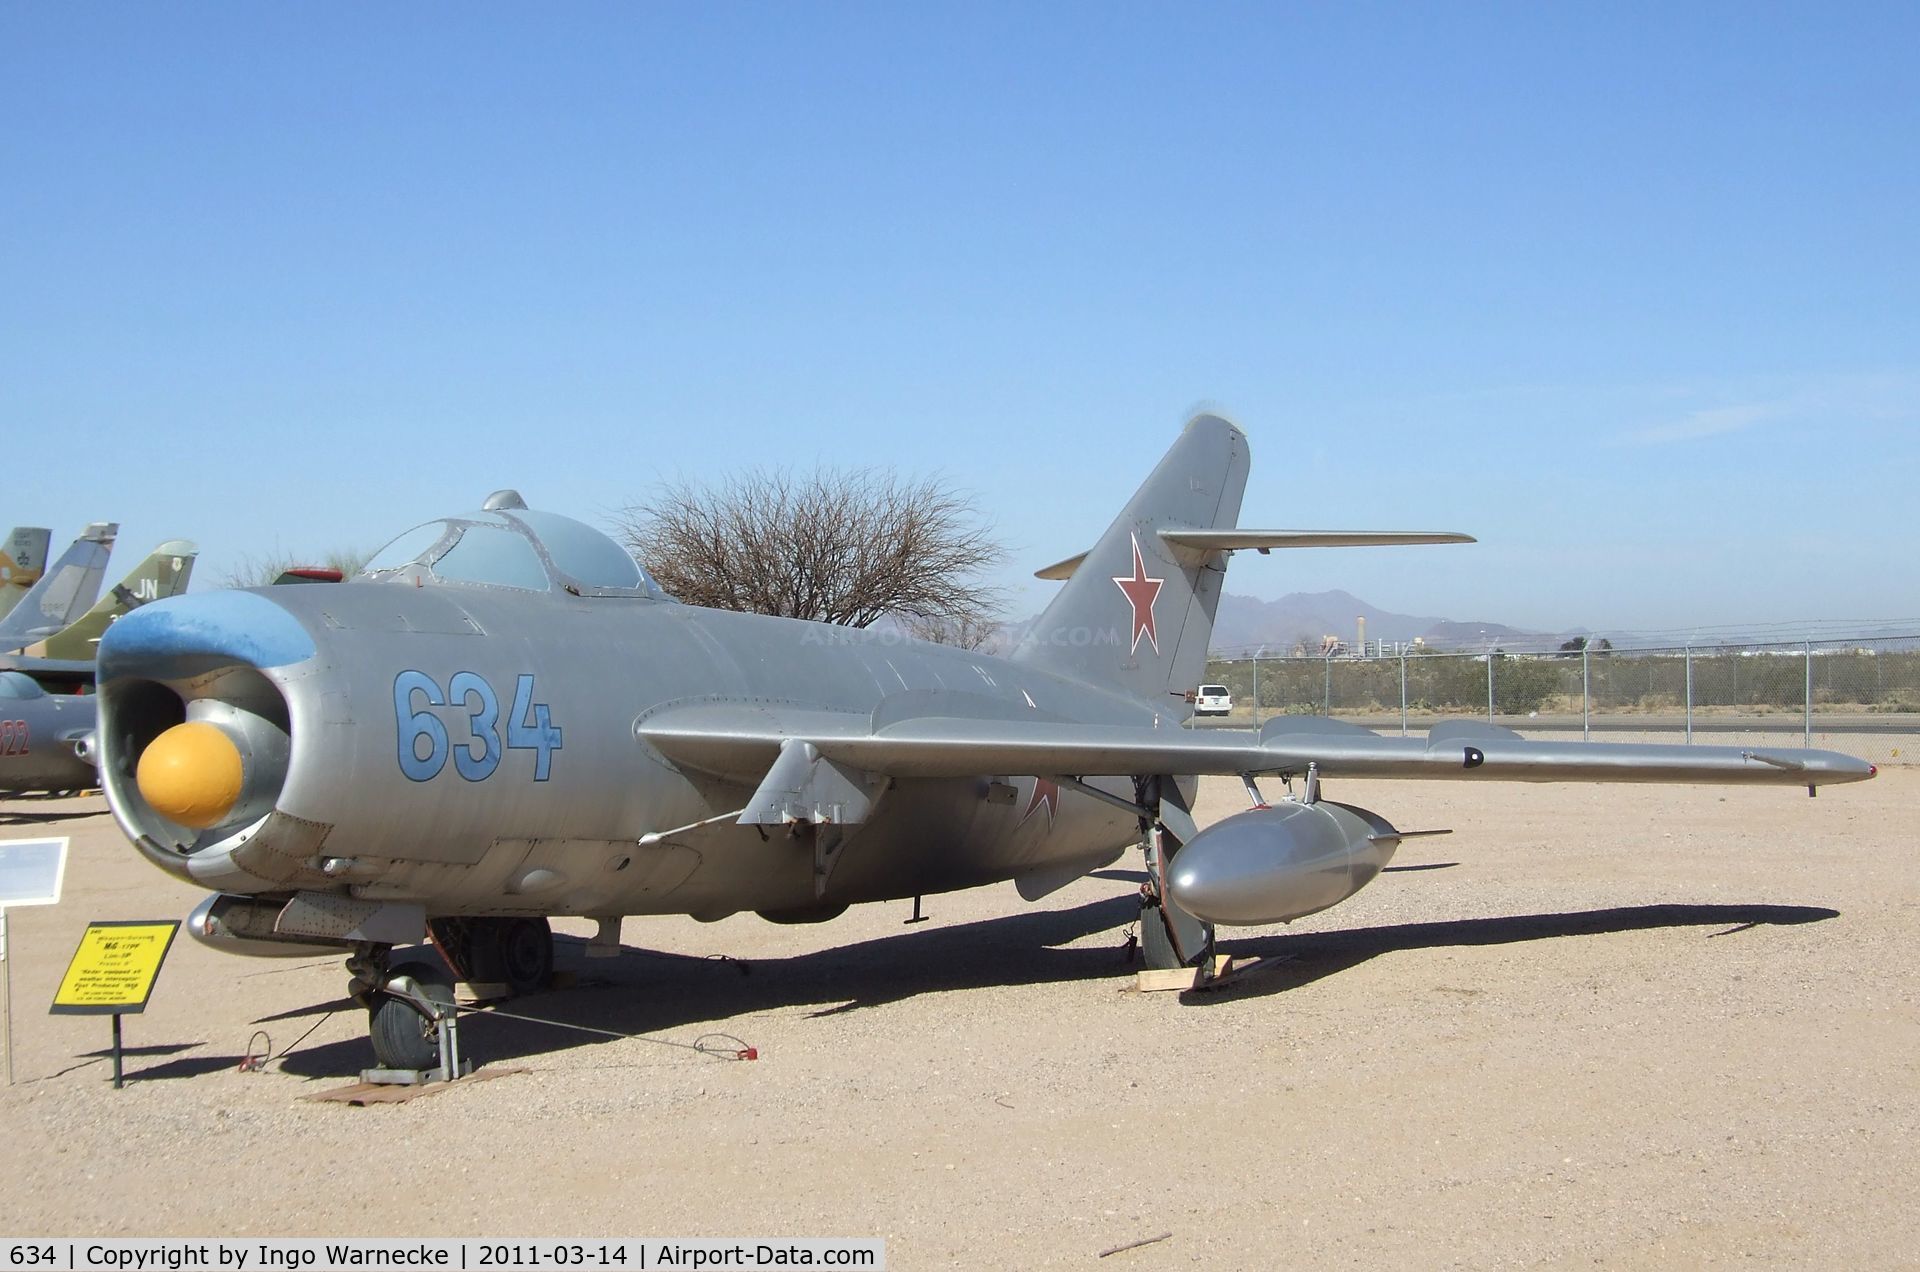 634, Mikoyan-Gurevich MiG-17PF C/N 1D-0634, Mikoyan i Gurevich MiG-17PF FRESCO-D at the Pima Air & Space Museum, Tucson AZ